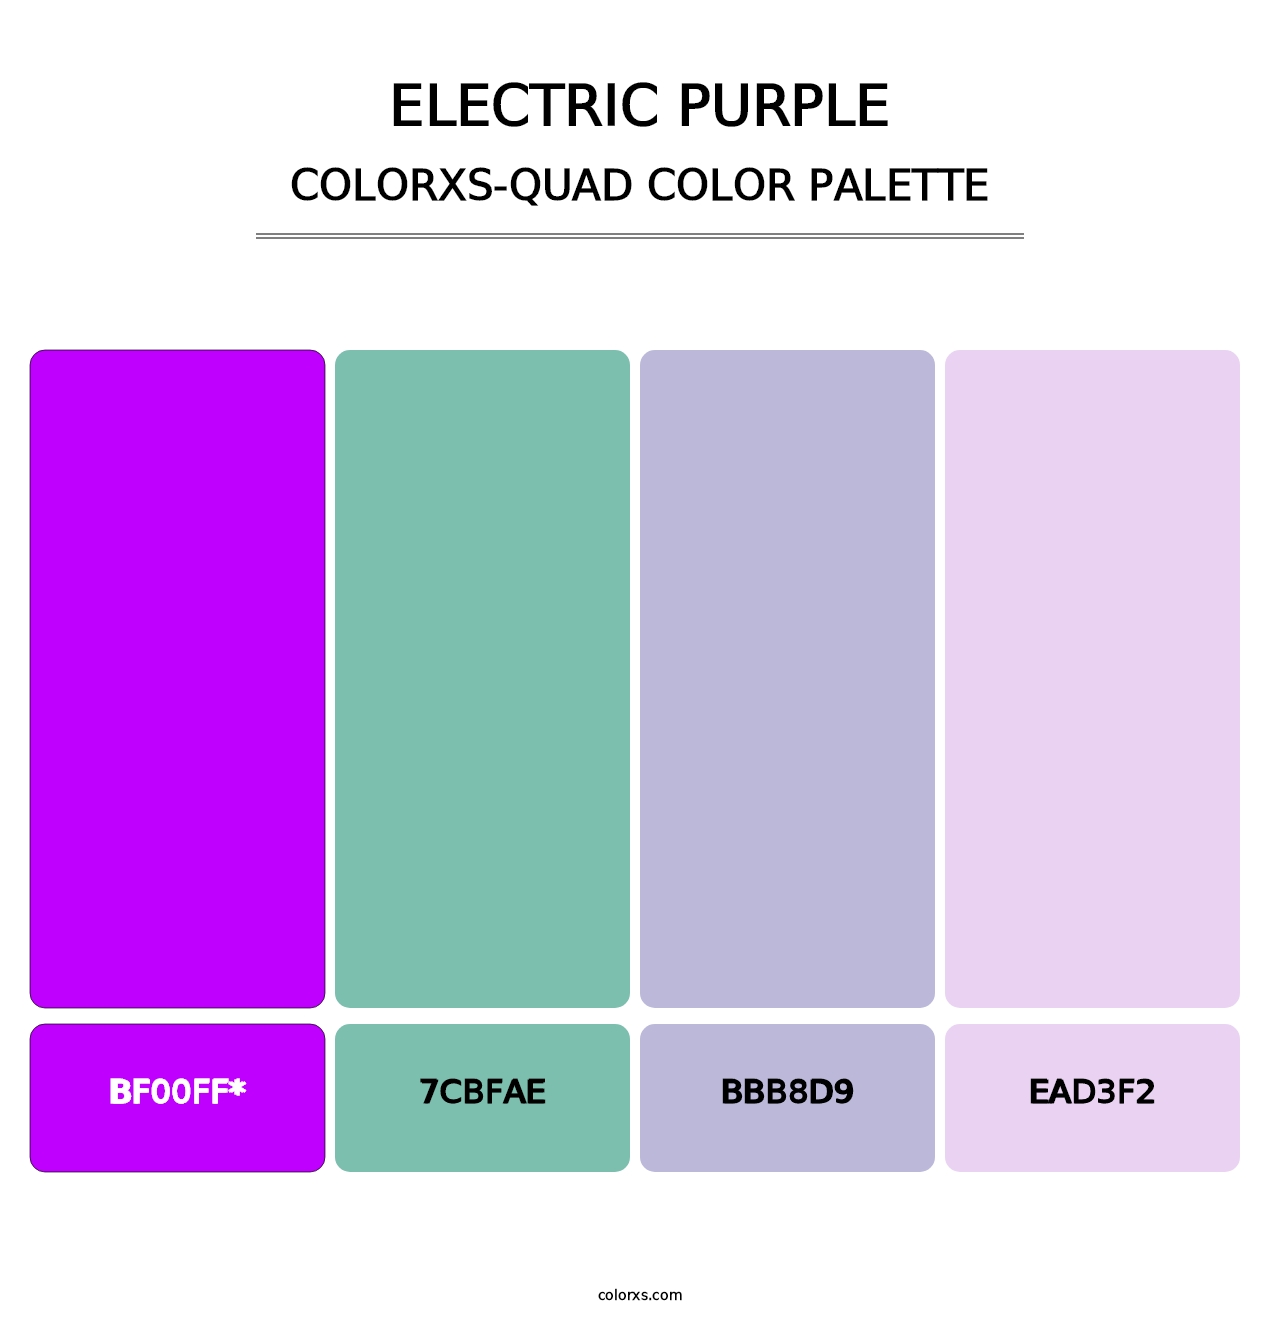 Electric Purple - Colorxs Quad Palette